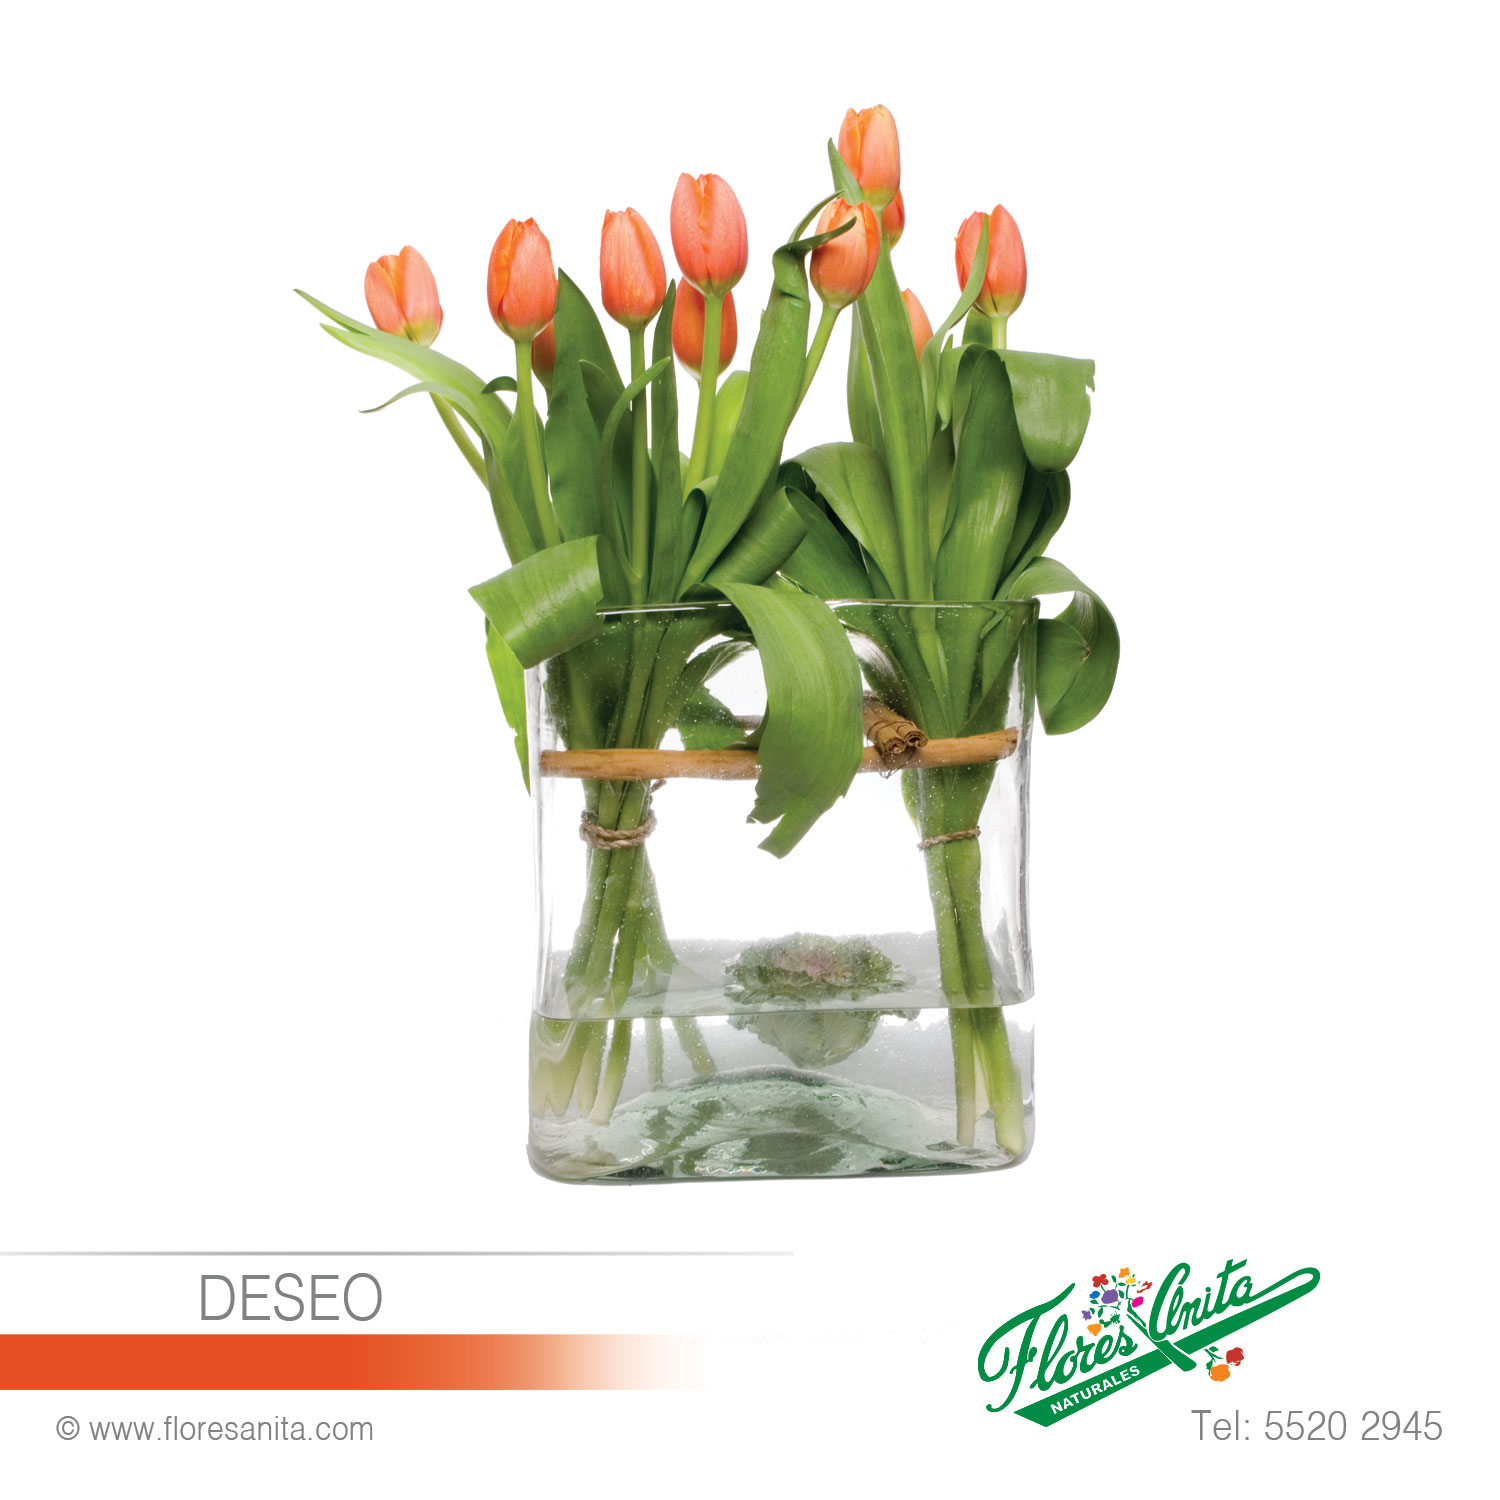 DESEO (Arreglo Floral) Tulipanes - Florería 